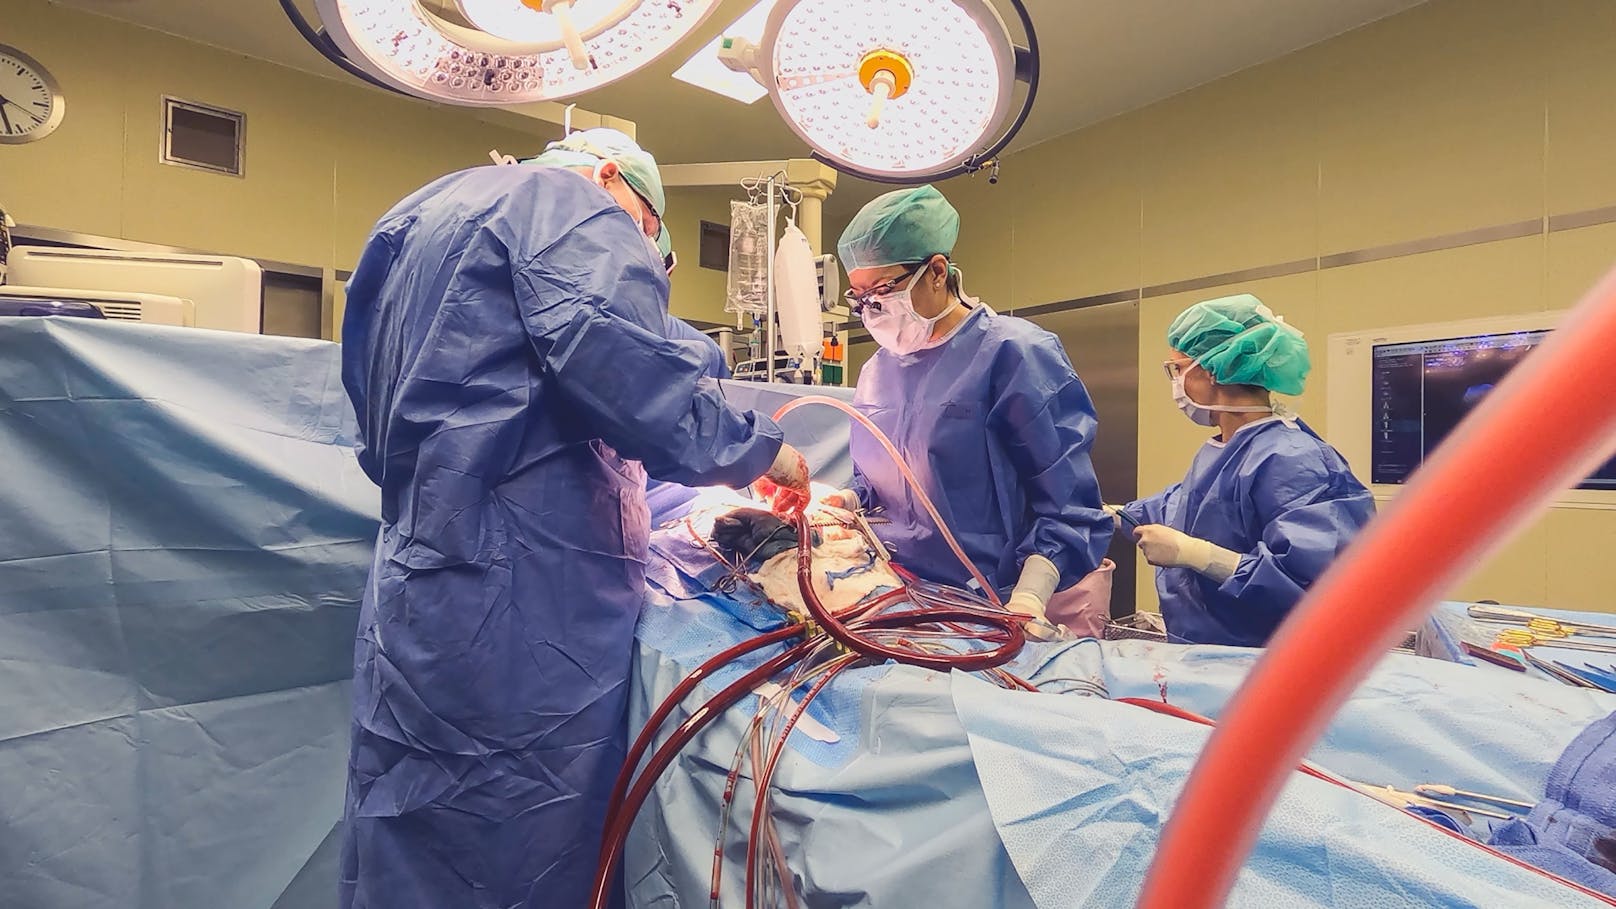 Die Dokumentation "Die Herz-OP" ermöglicht faszinierende Einblicke in eine Welt, die man als Nicht-Mediziner so niemals zu sehen bekommen würde.